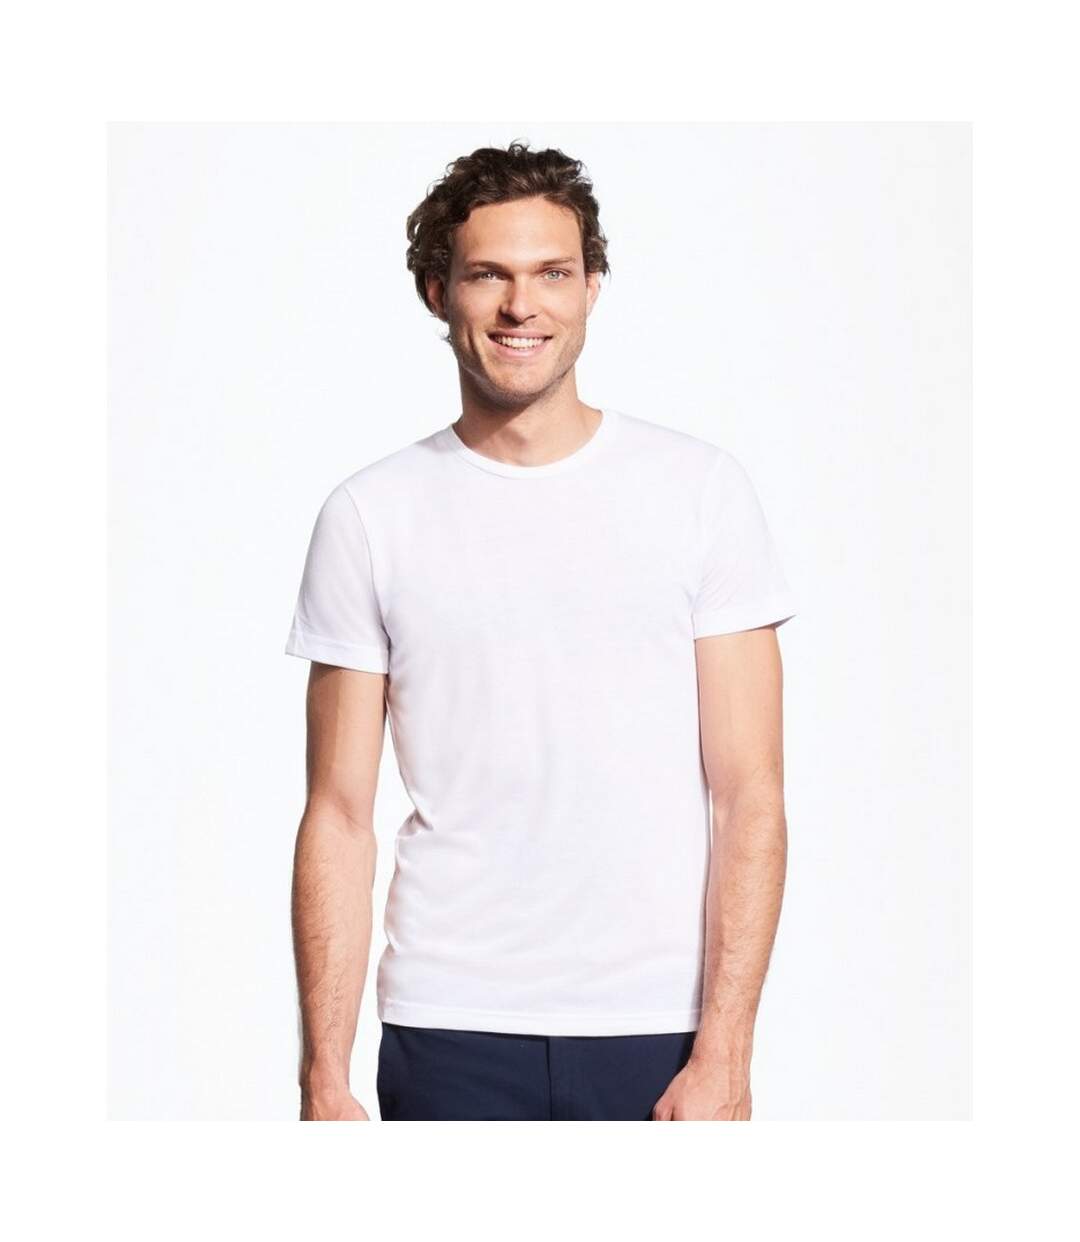 SOLS Sublima - T-shirt à manches courtes - Adulte unisexe (Blanc) - UTPC2133